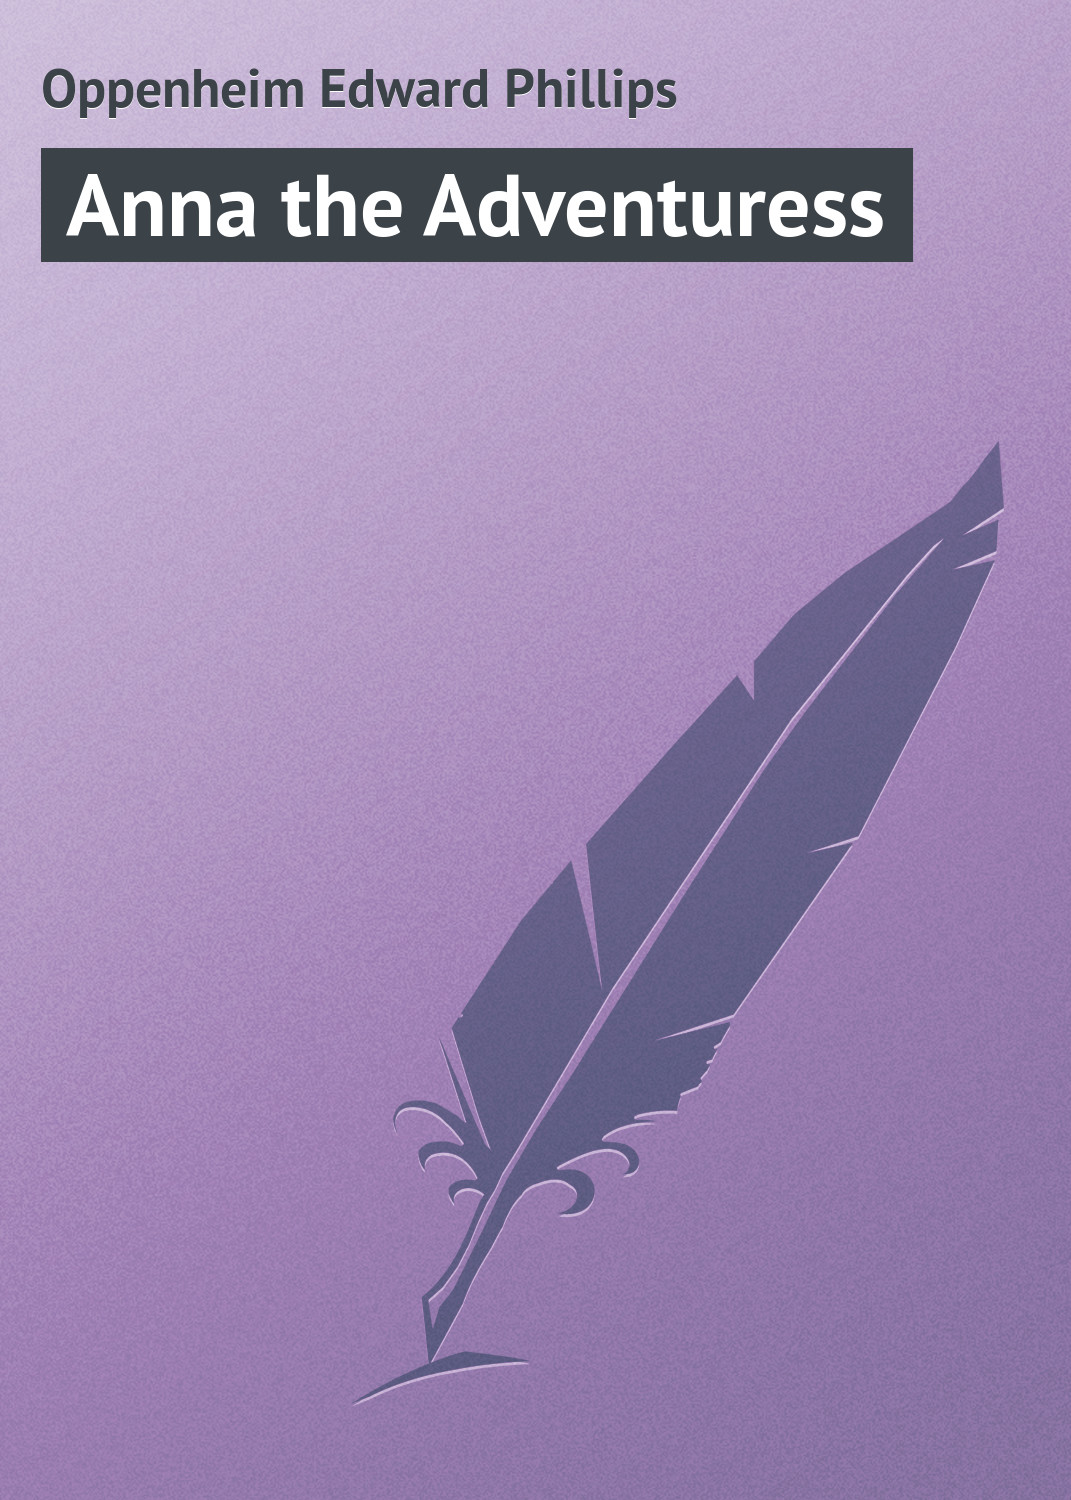 Книга Anna the Adventuress из серии , созданная Edward Oppenheim, может относится к жанру Зарубежная классика, Иностранные языки. Стоимость электронной книги Anna the Adventuress с идентификатором 23164643 составляет 5.99 руб.